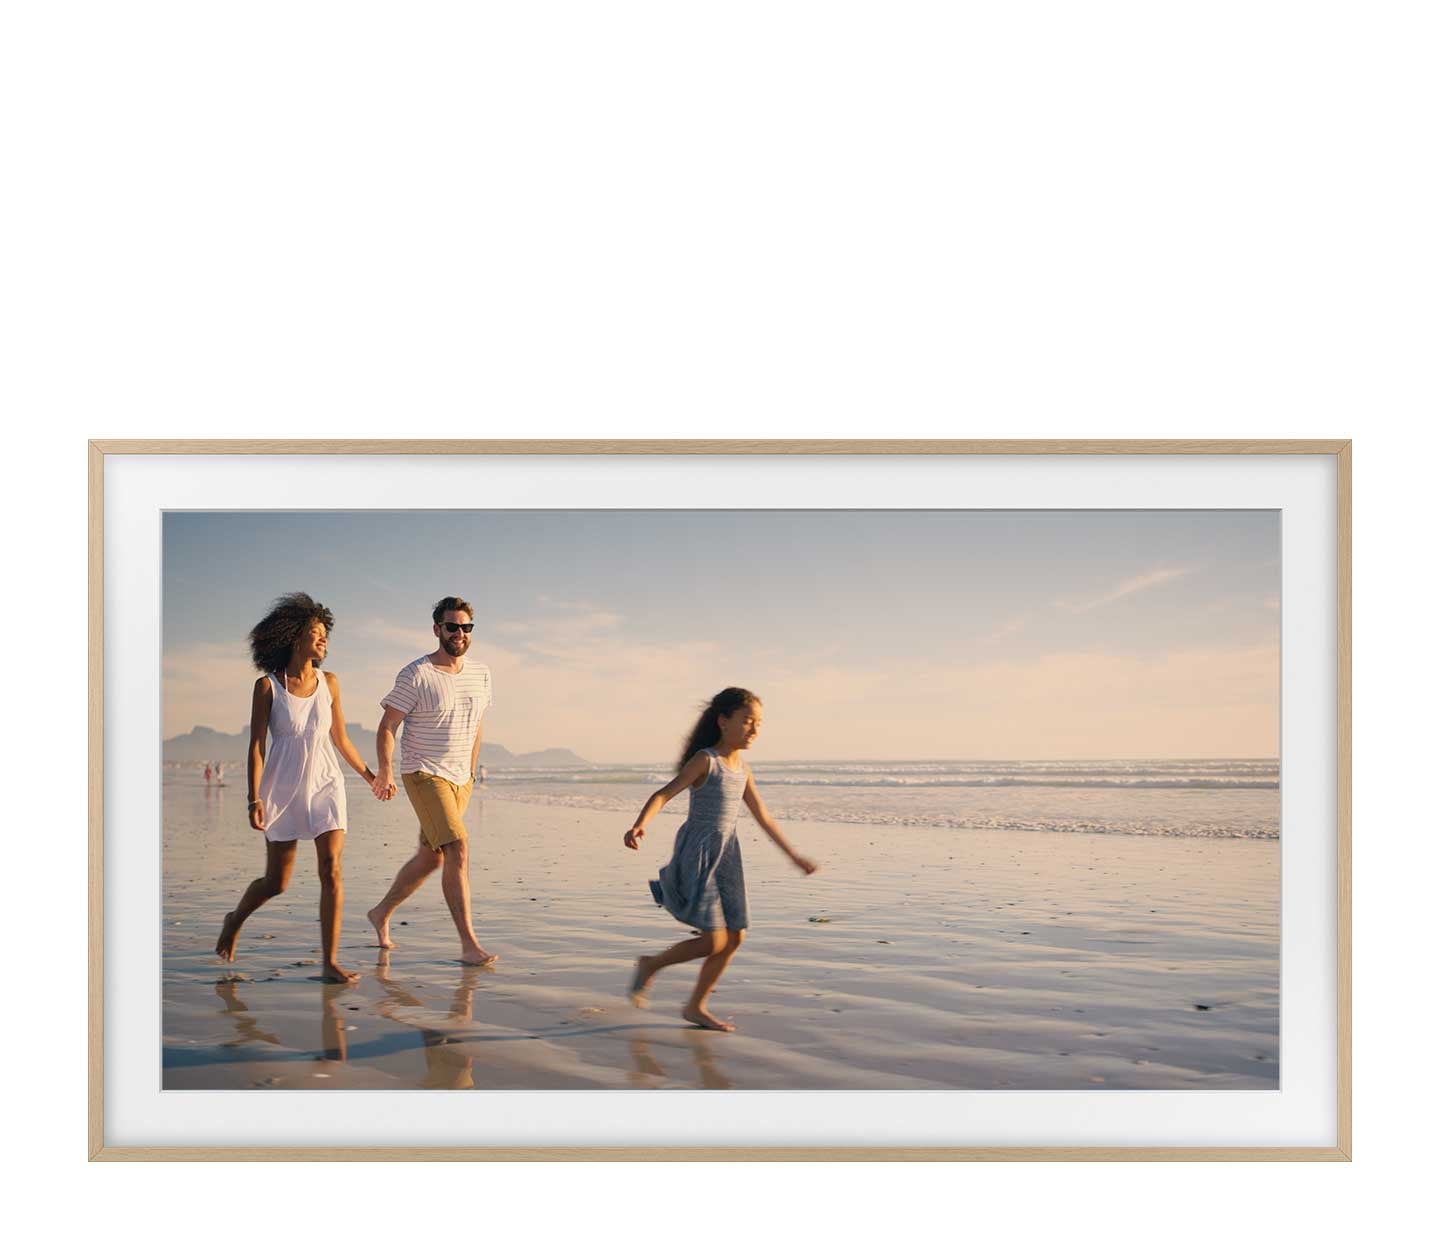 Una familia está en la playa. El marco muestra una foto de este momento memorable